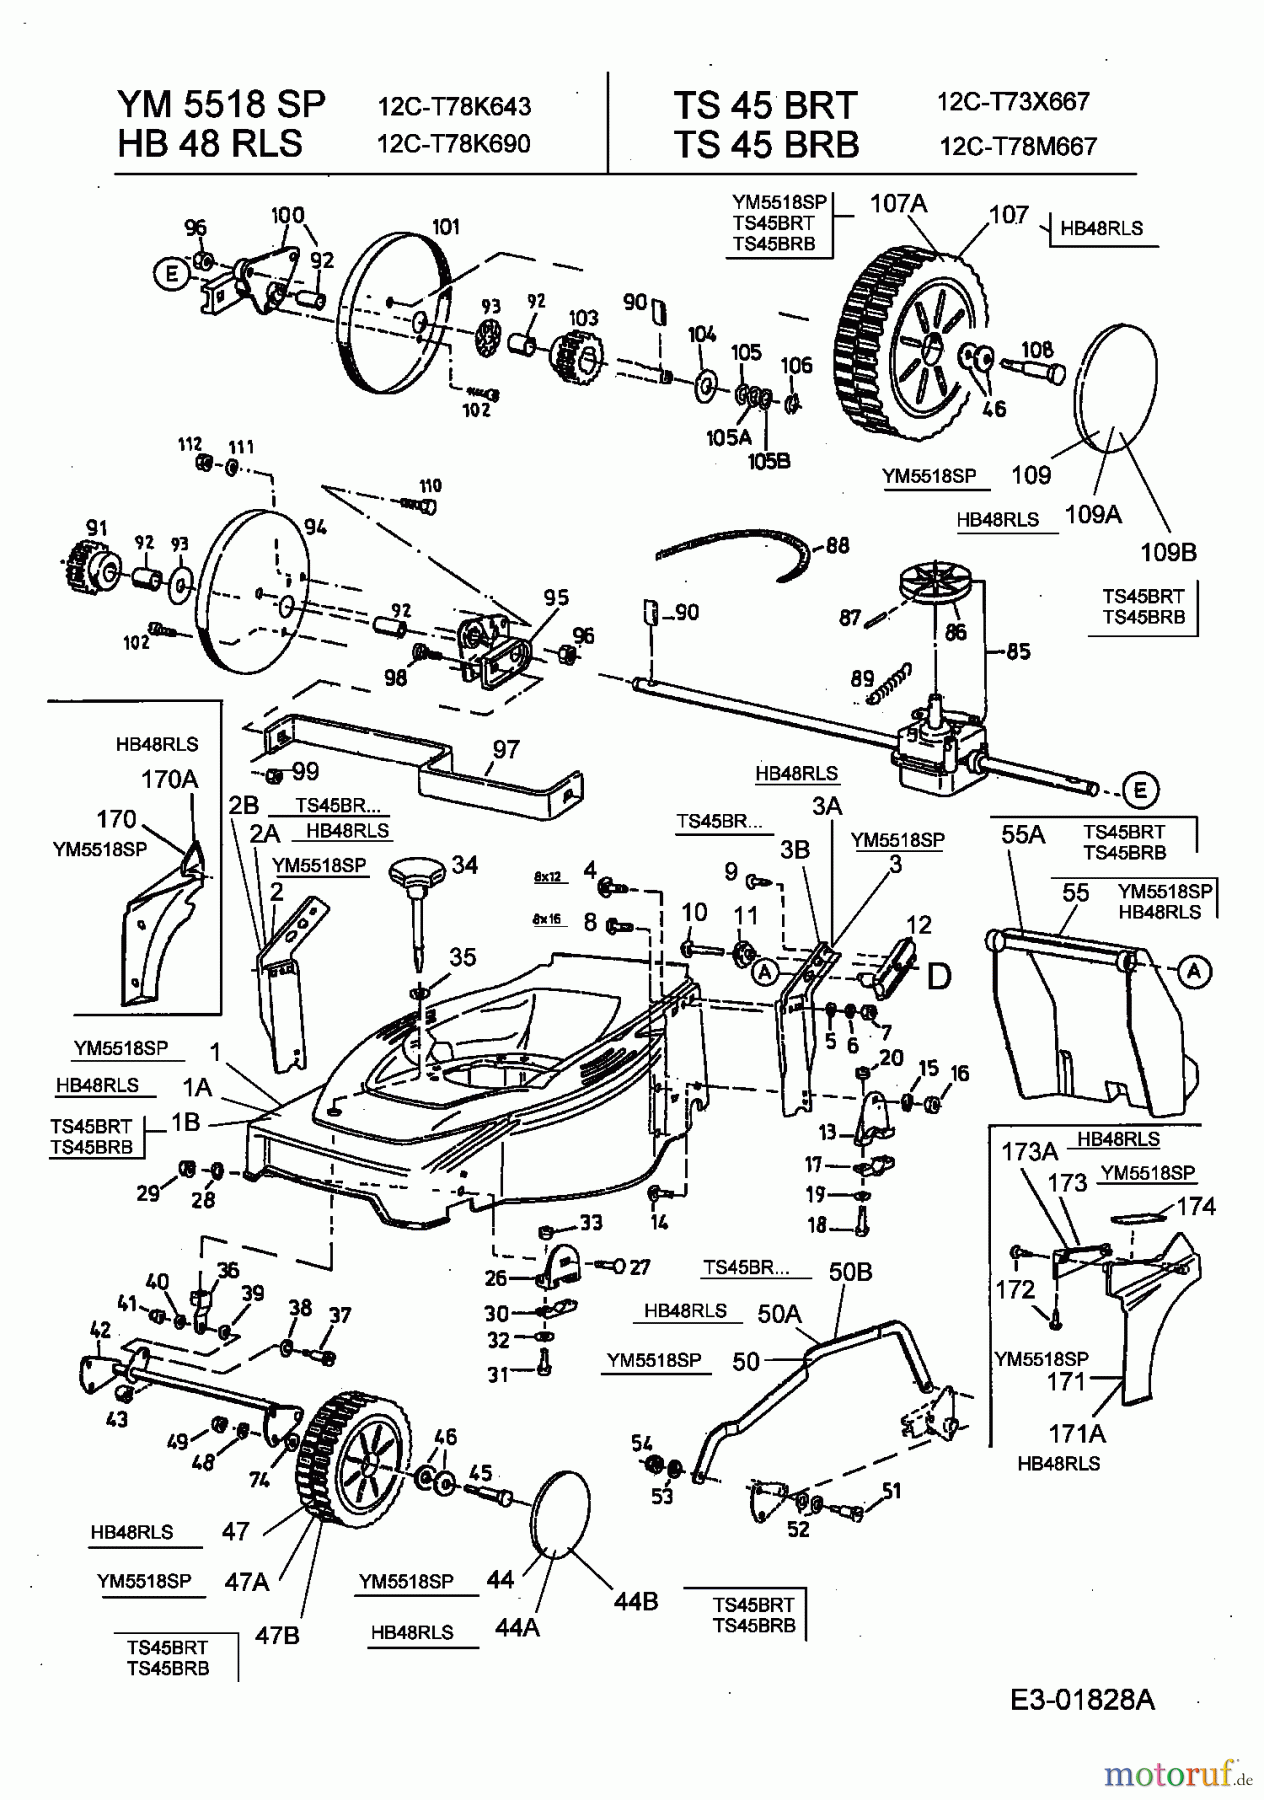  Gutbrod Motormäher mit Antrieb HB 48 RLS 12C-T78K690  (2003) Getriebe, Räder, Schnitthöhenverstellung